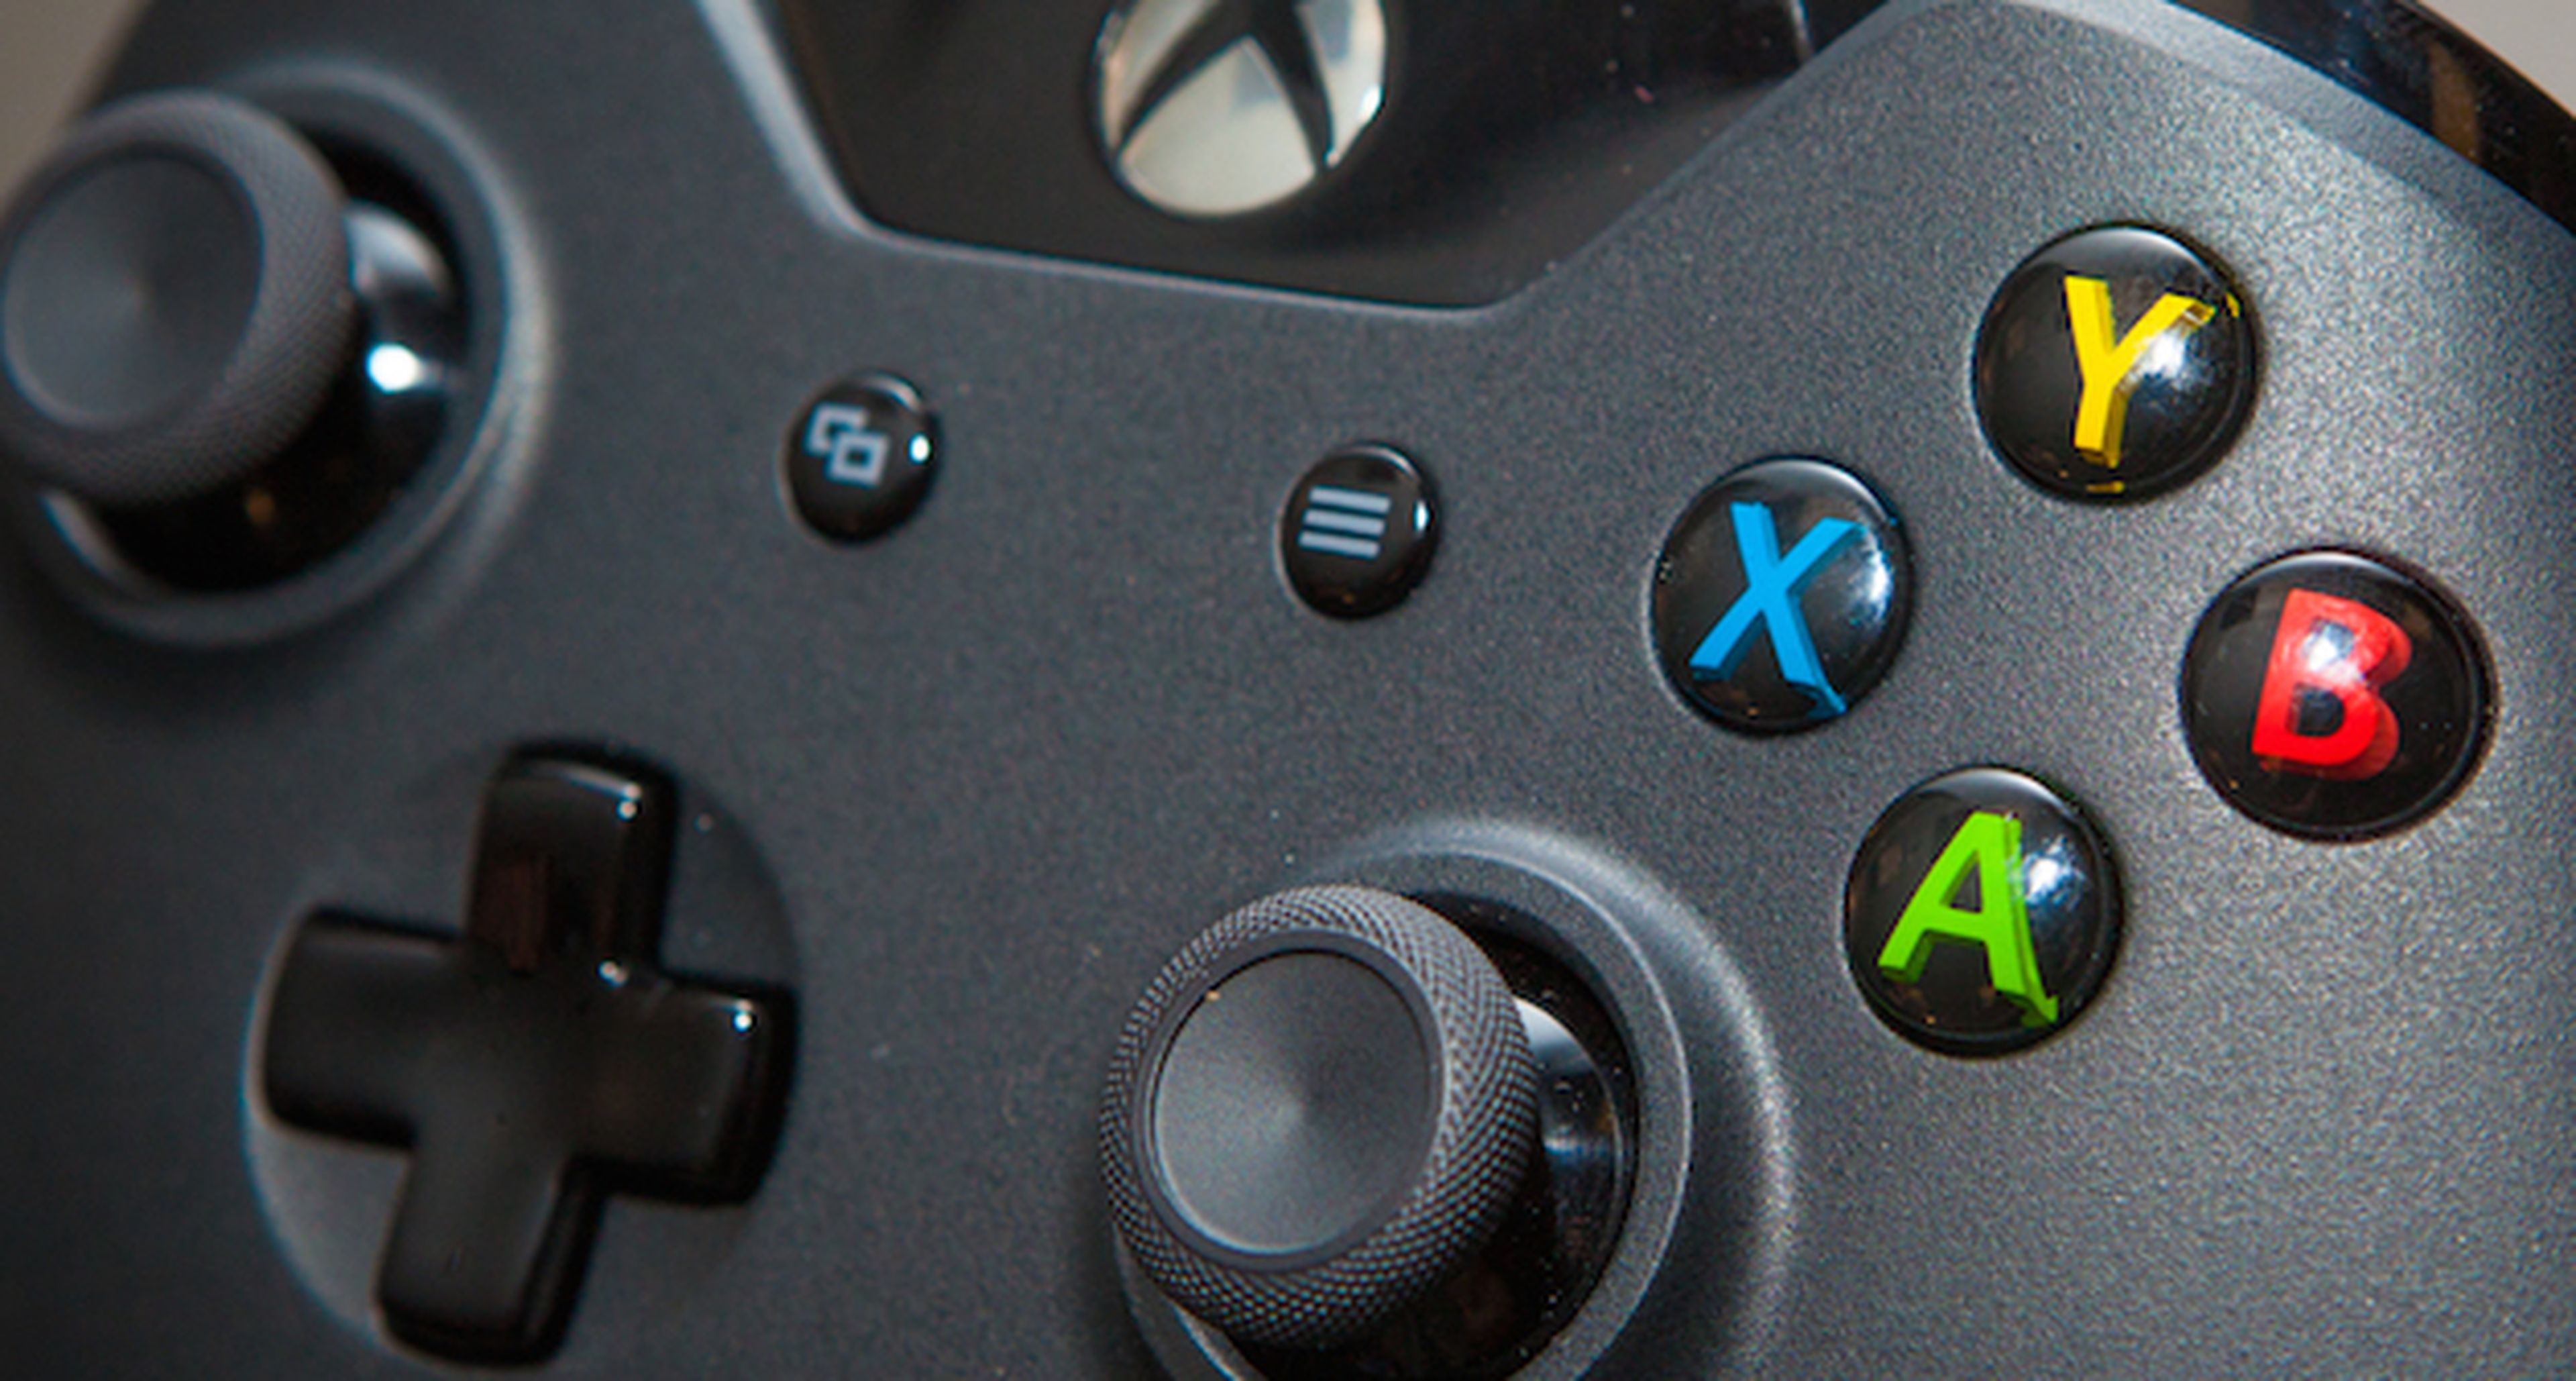 El mando de Xbox One actualiza su firmware